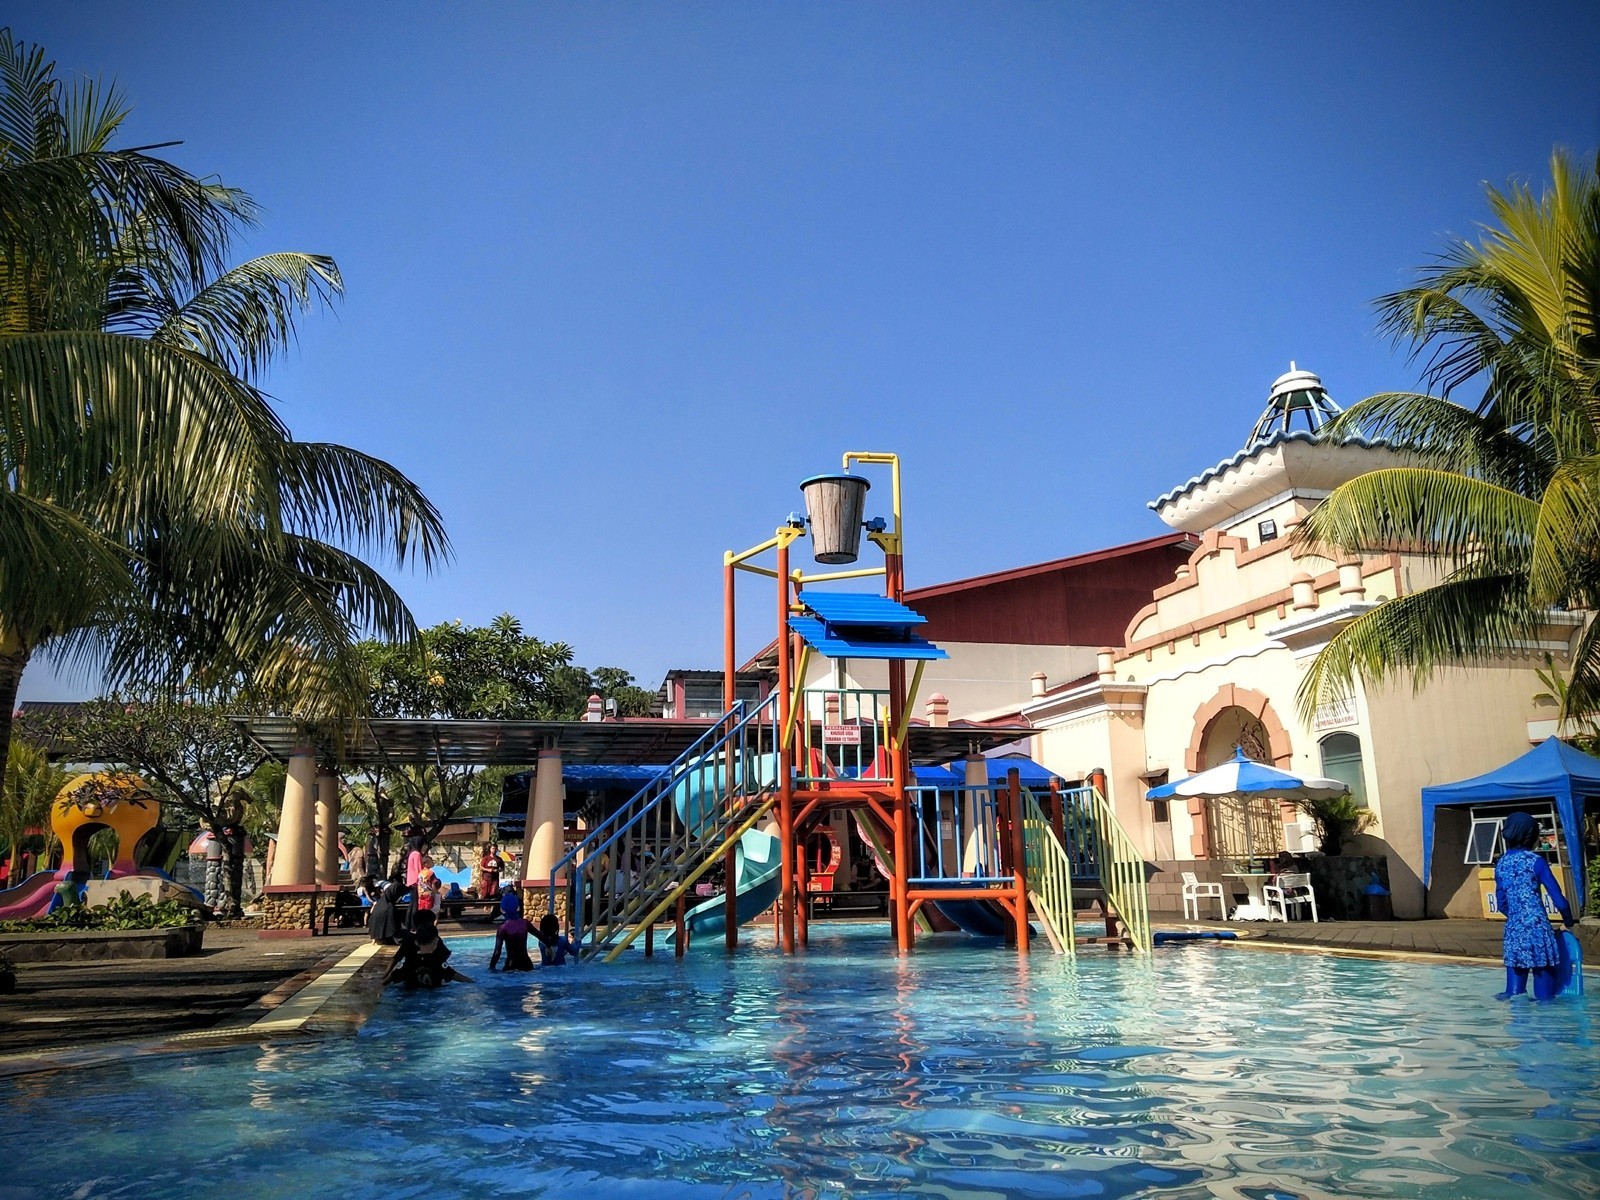 Tempat Wisata di Bogor bertemakan Water Park dengan kolam dan wahana ember tumpah